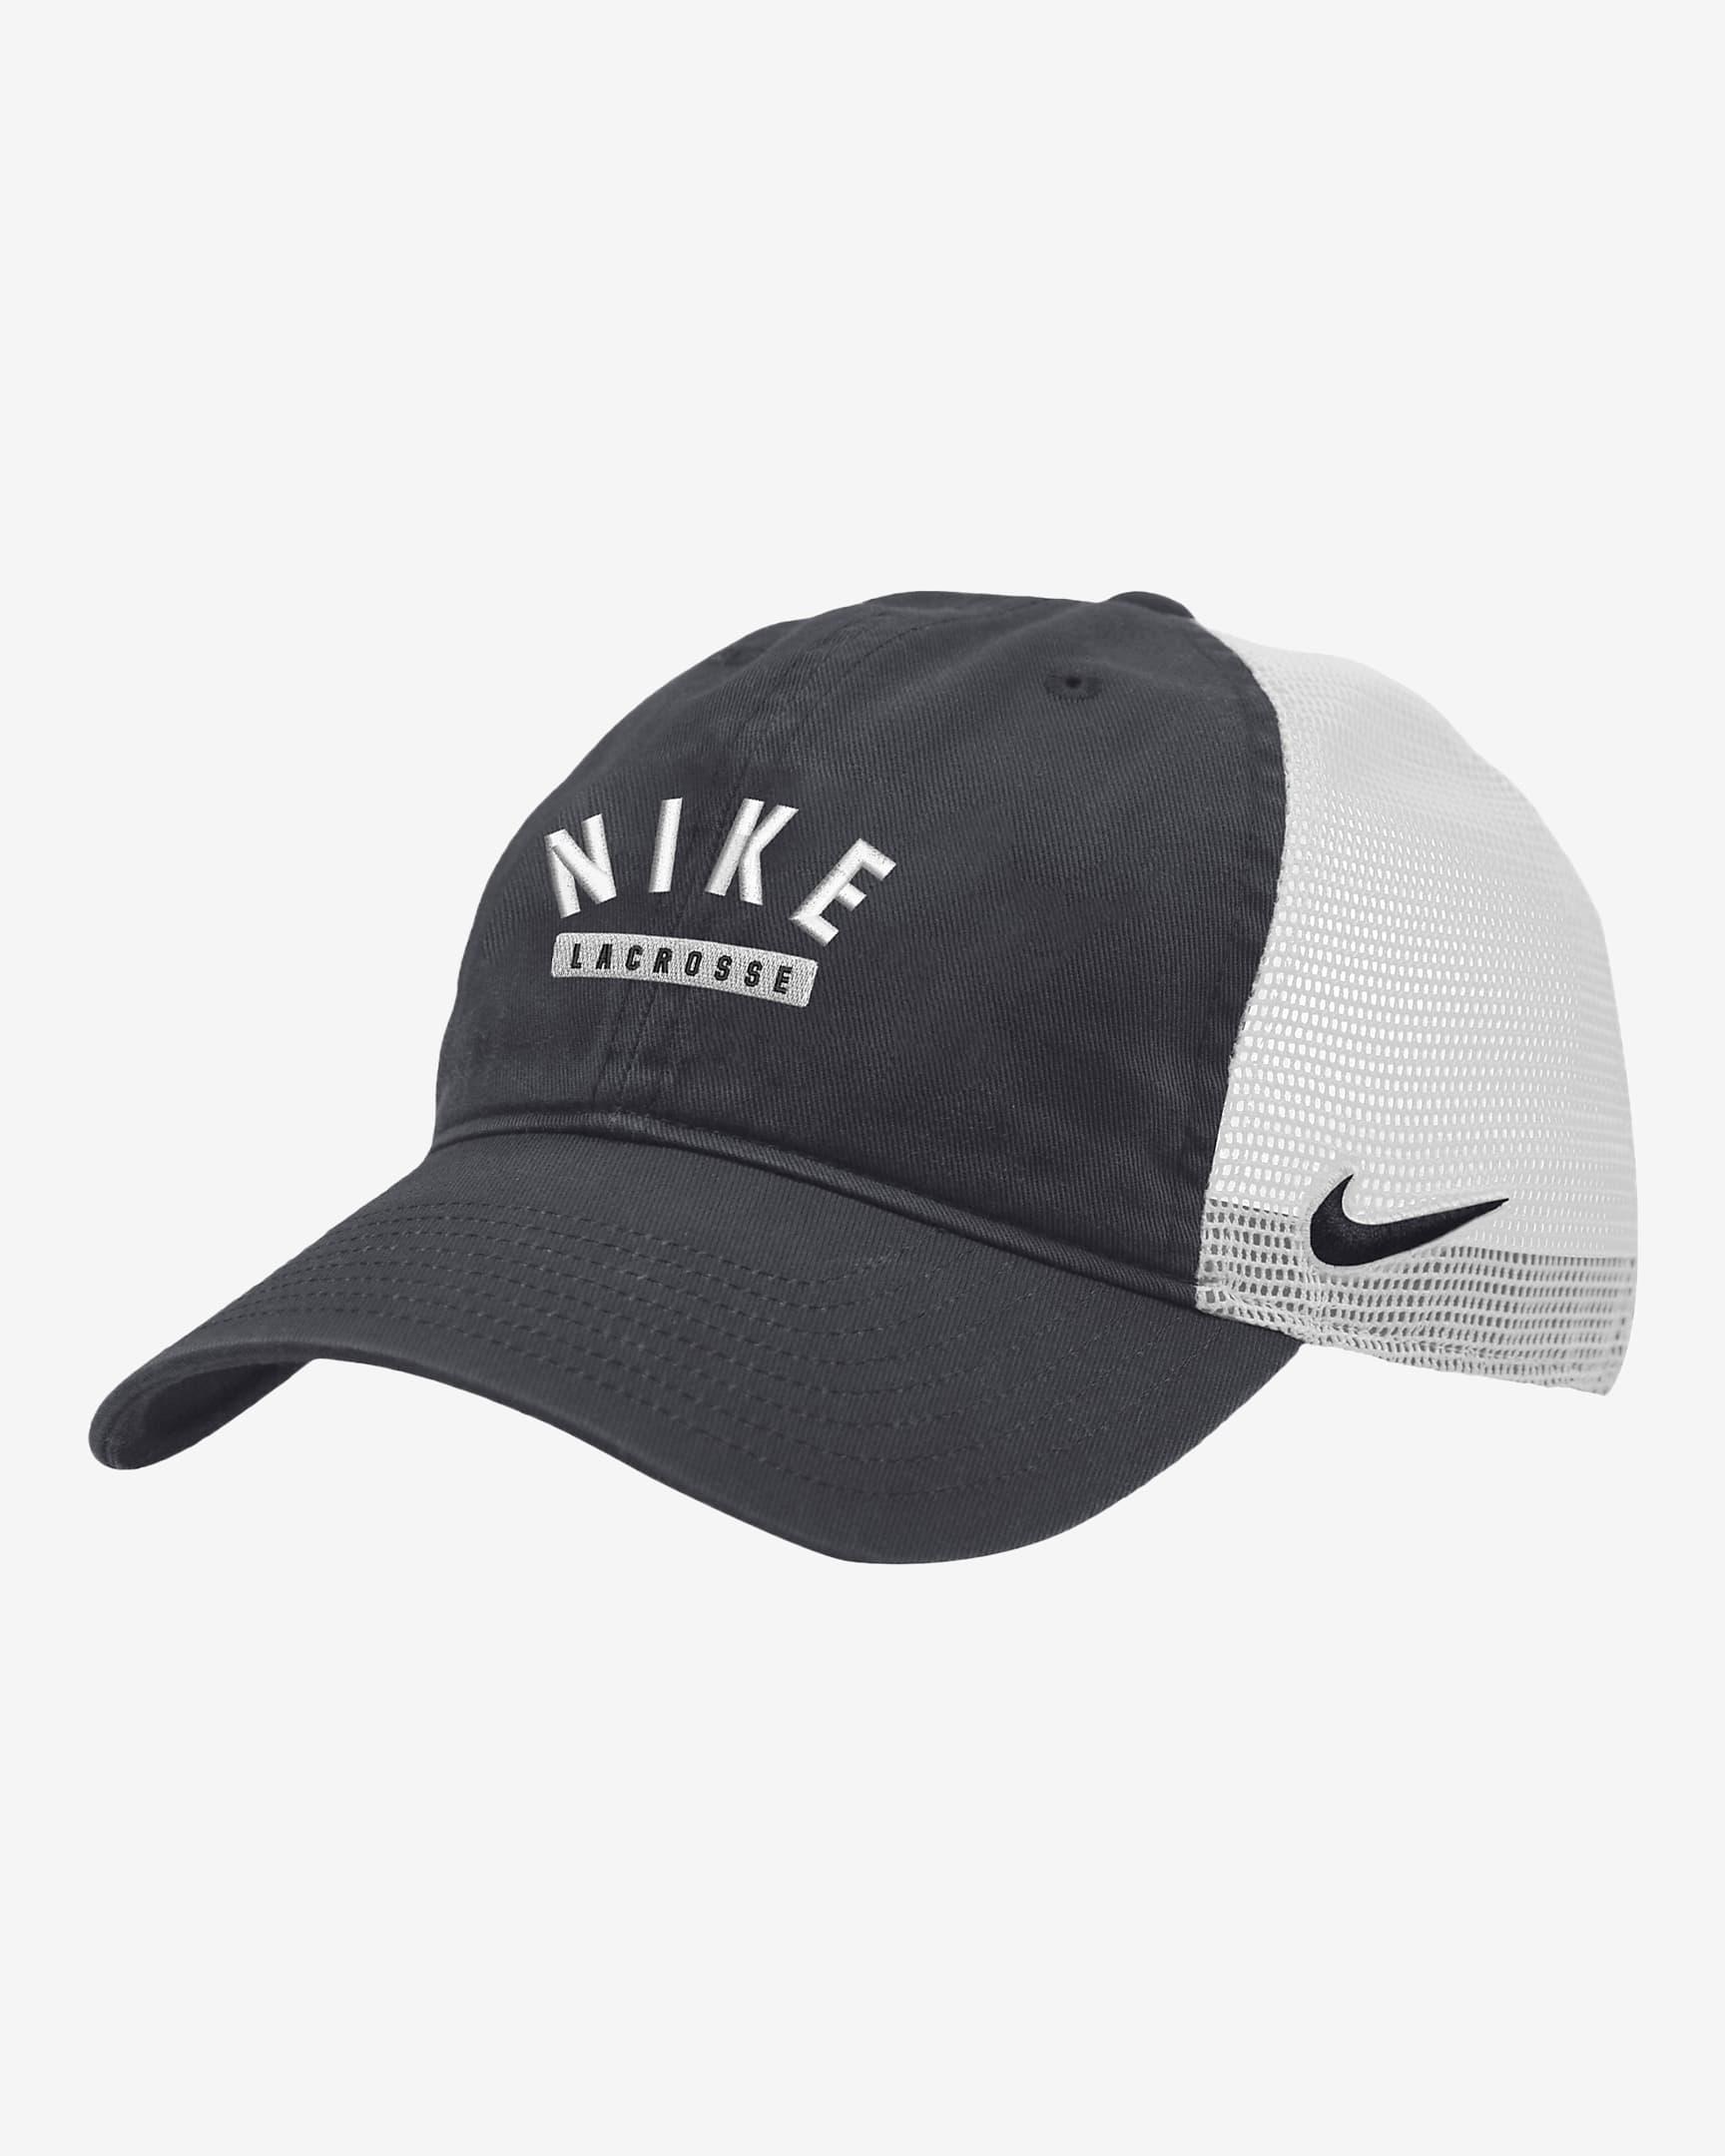 Nike Lacrosse Trucker Hat. Nike.com